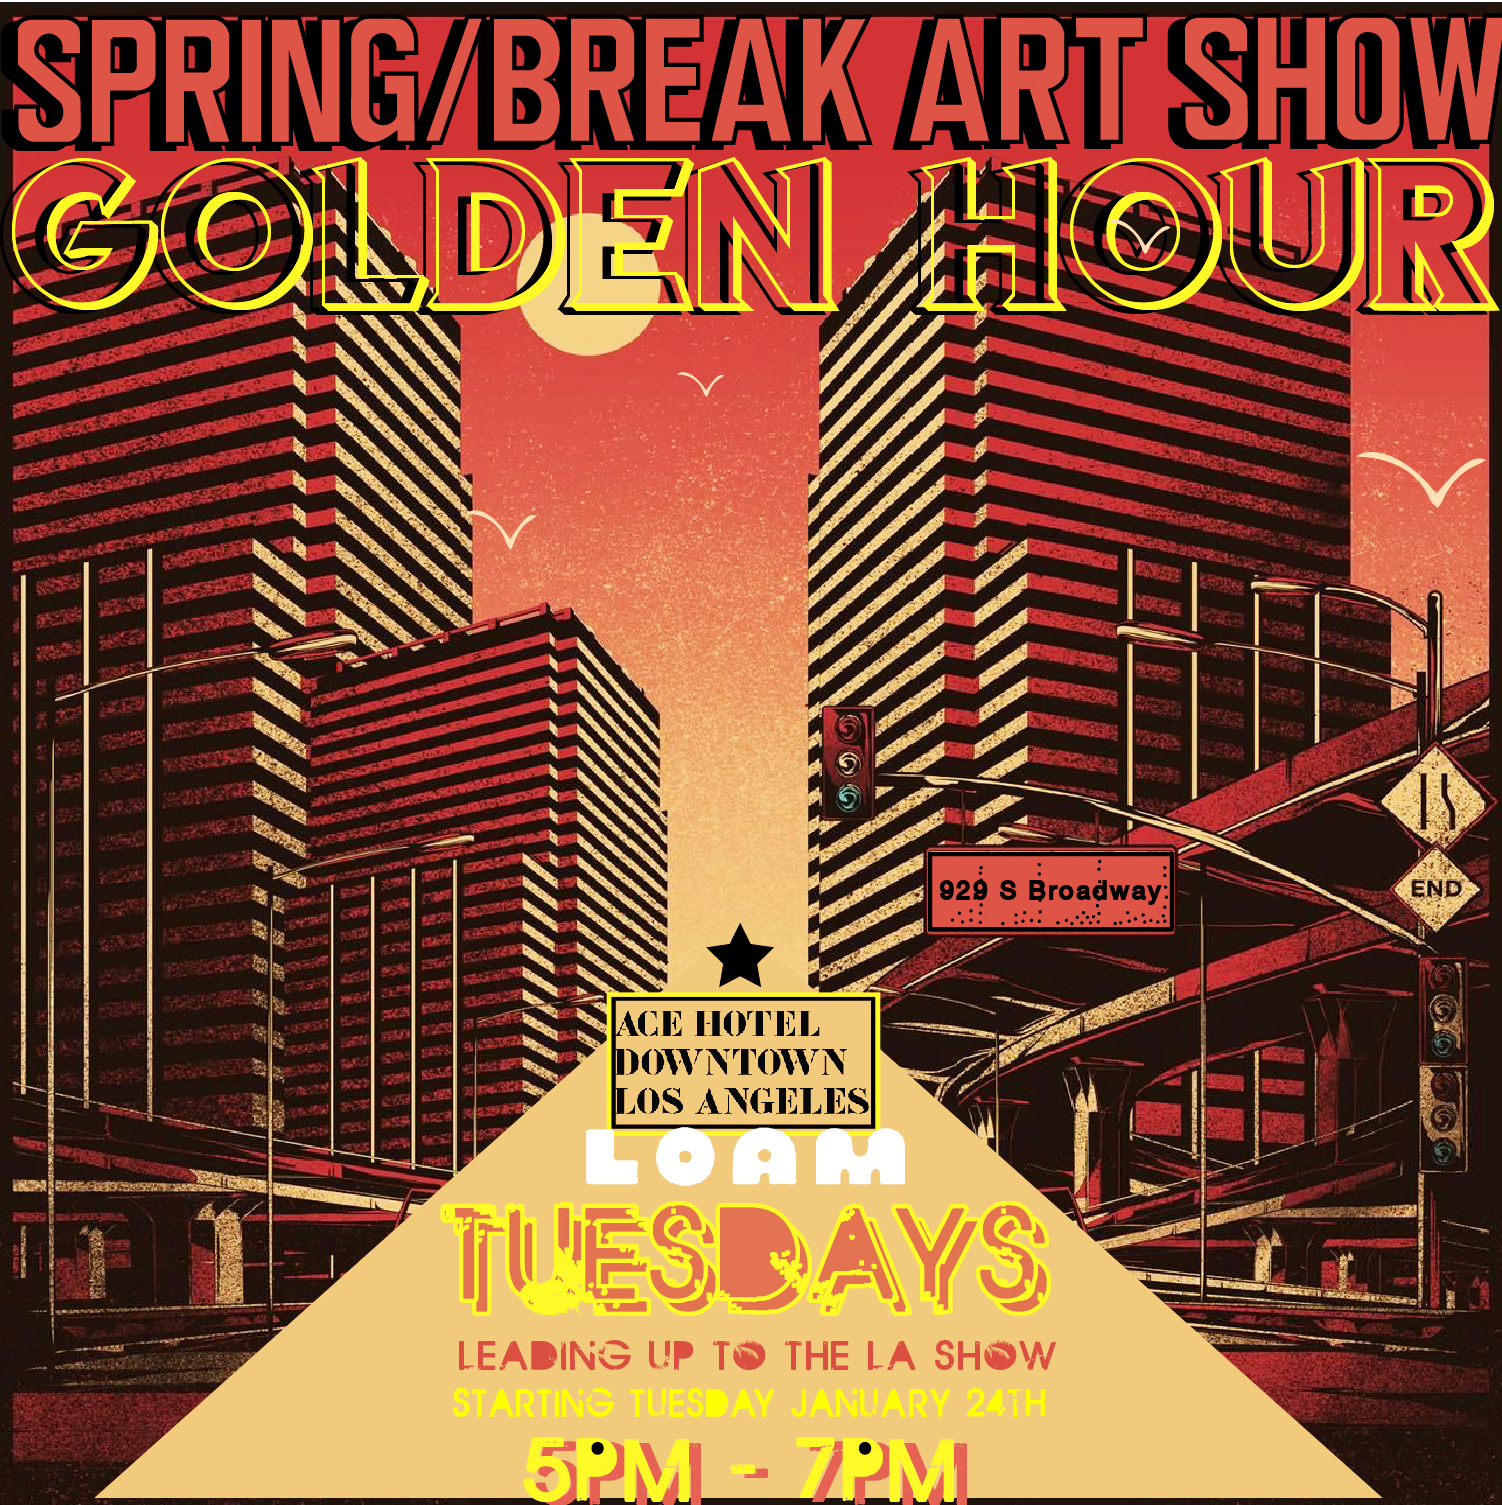 Spring/Break Art Show Golden Hour promo